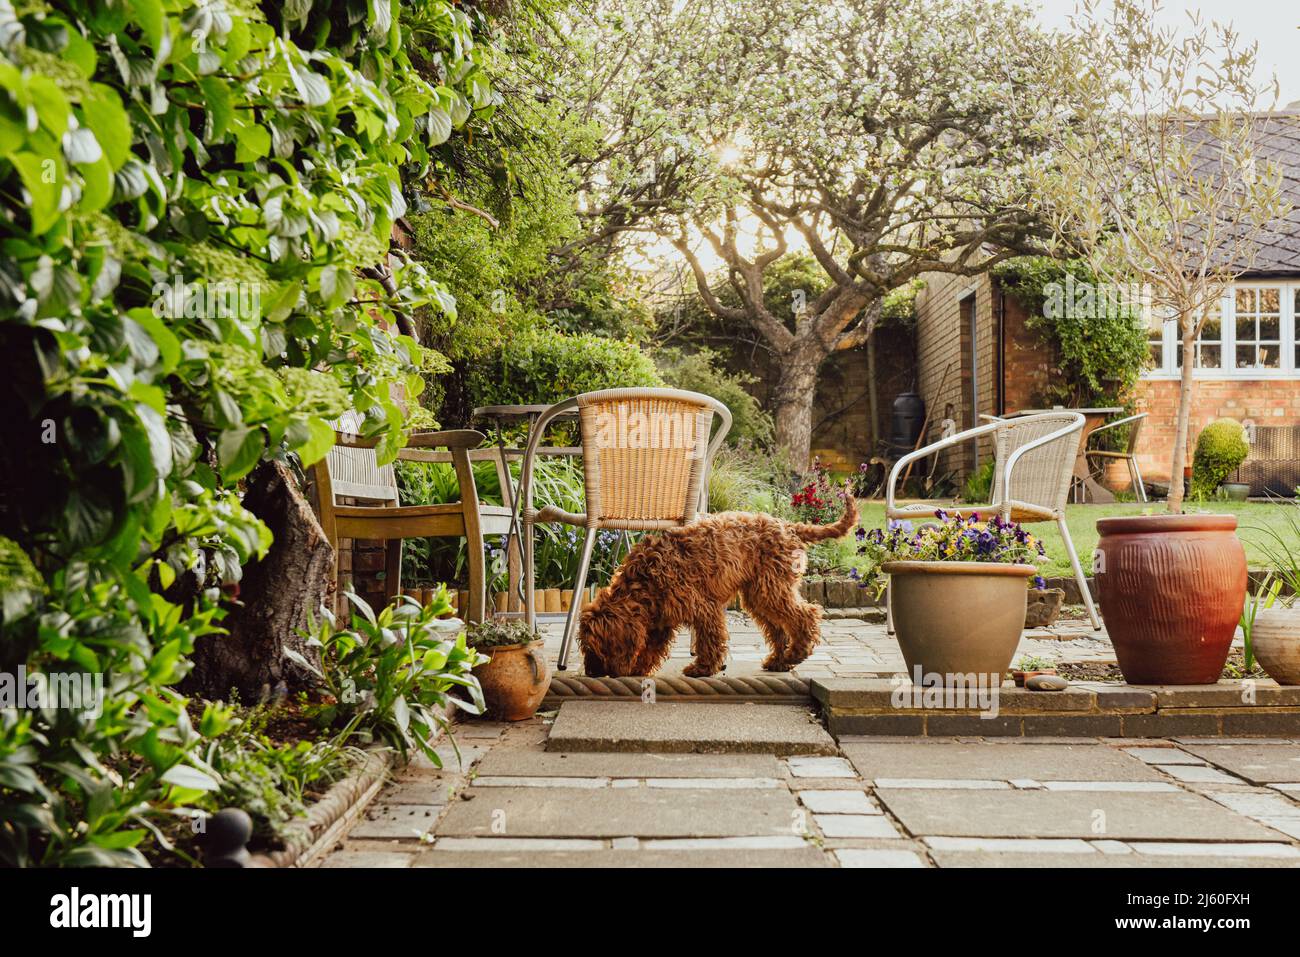 Dans un jardin domestique, le chien d'animal de compagnie apprend à renifler de nouvelles odeurs et odeurs Banque D'Images